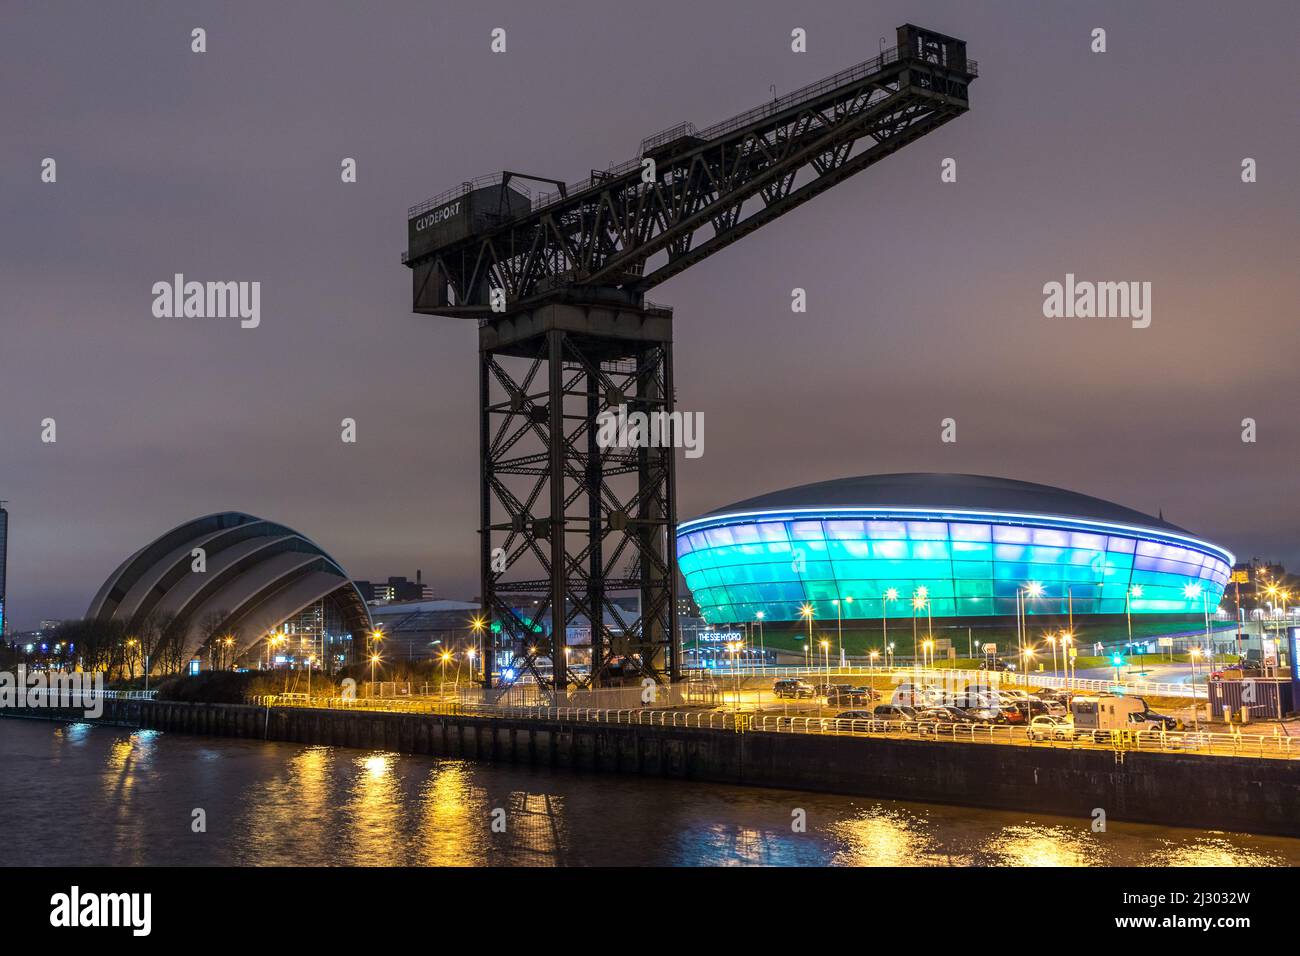 Clyde Shore am Abend, Finnieston Crane, SSE Hydro, Clyde Auditorium, Glasgow, Schottland, Vereinigtes Königreich Stockfoto